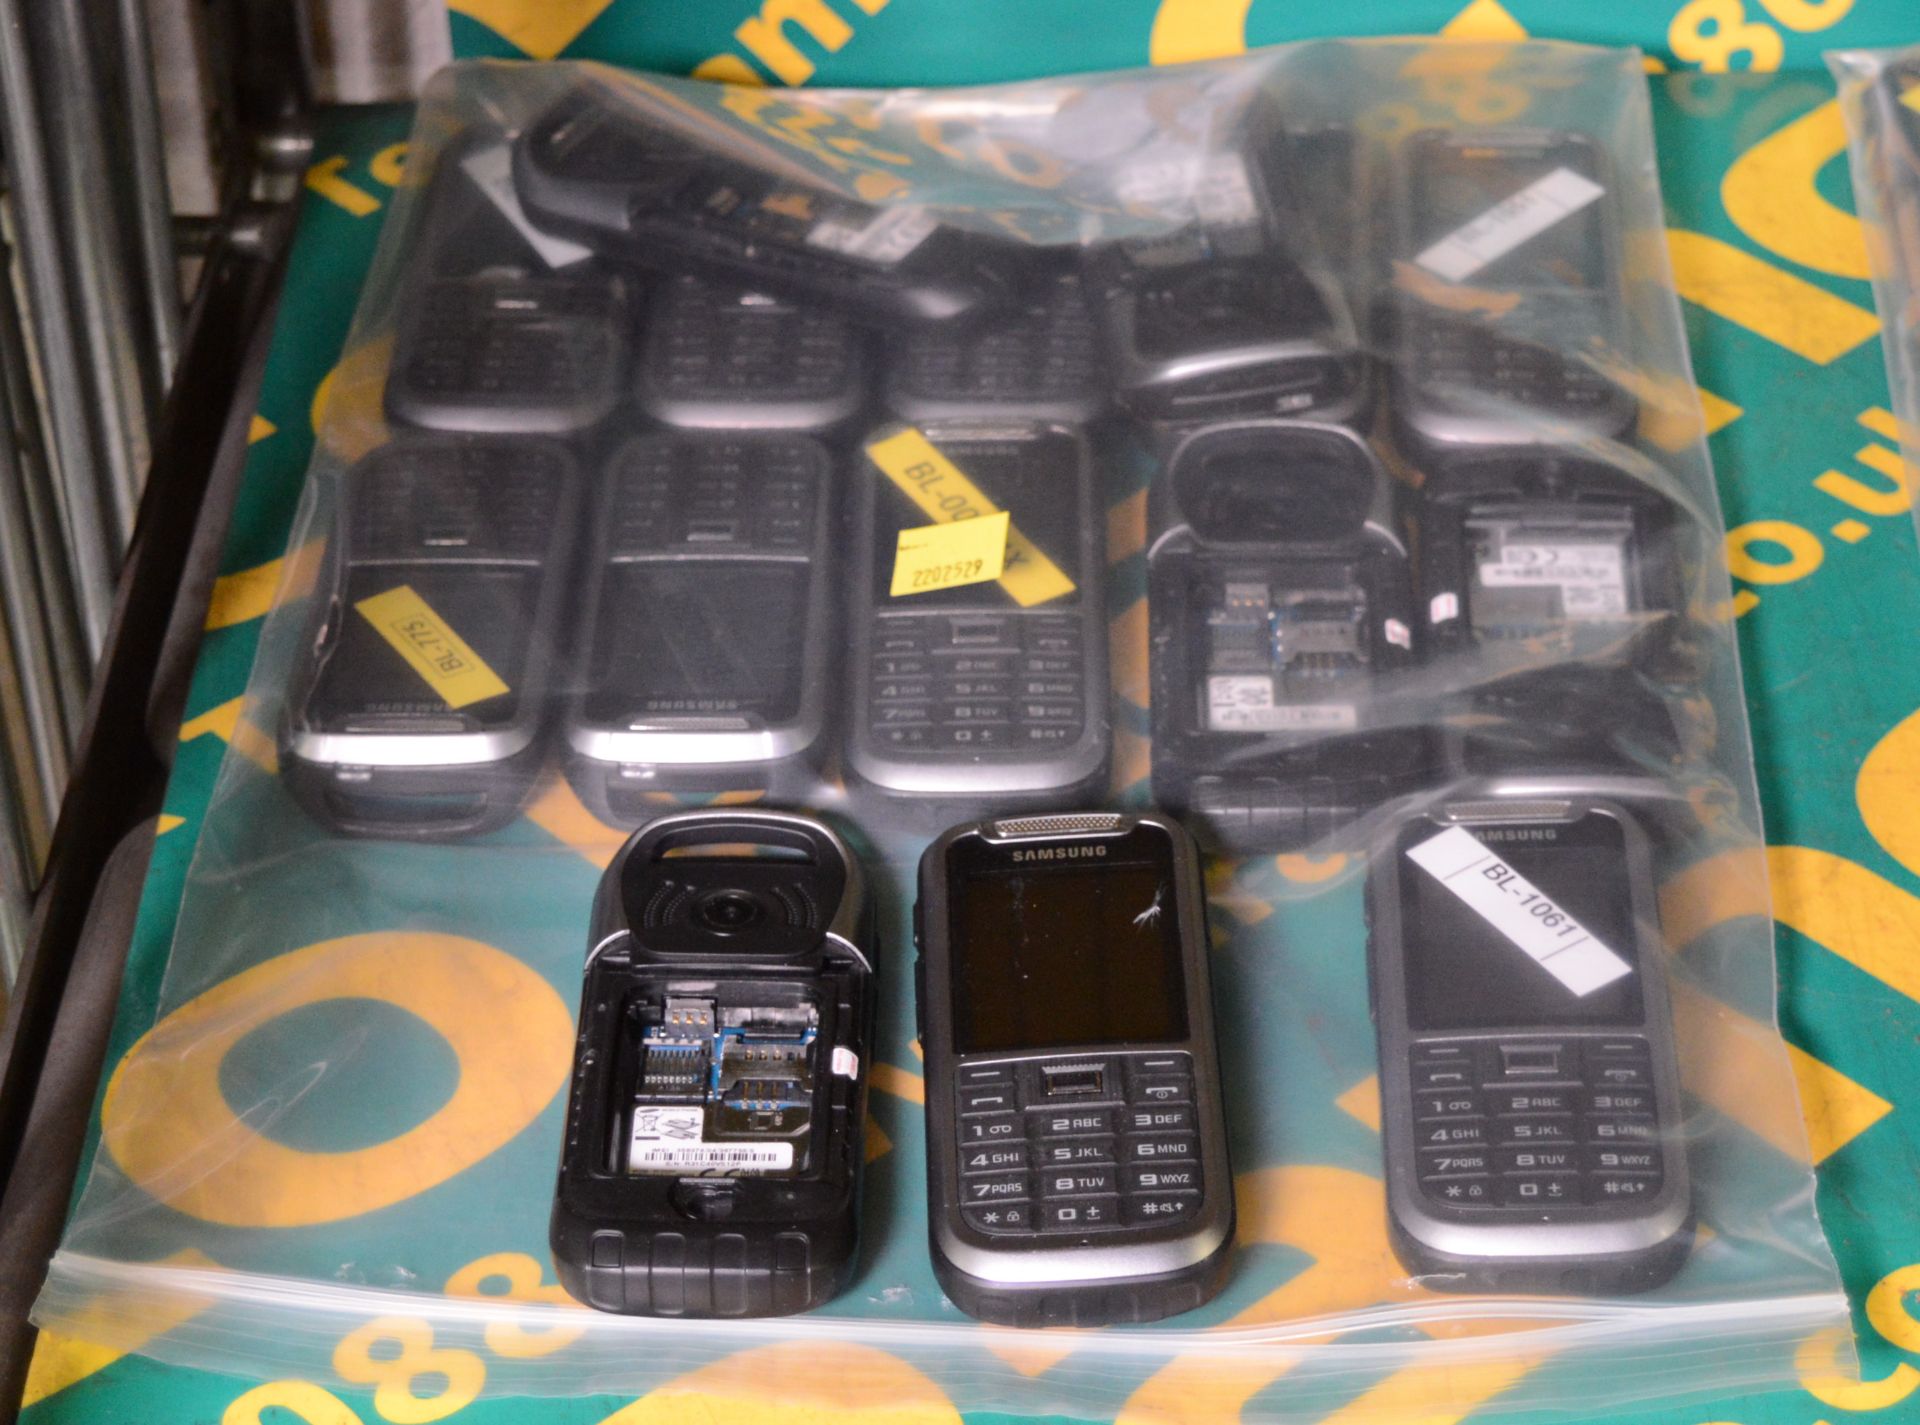 15x Samsung GT-C3350 Mobile Phones - No backs or batteries.